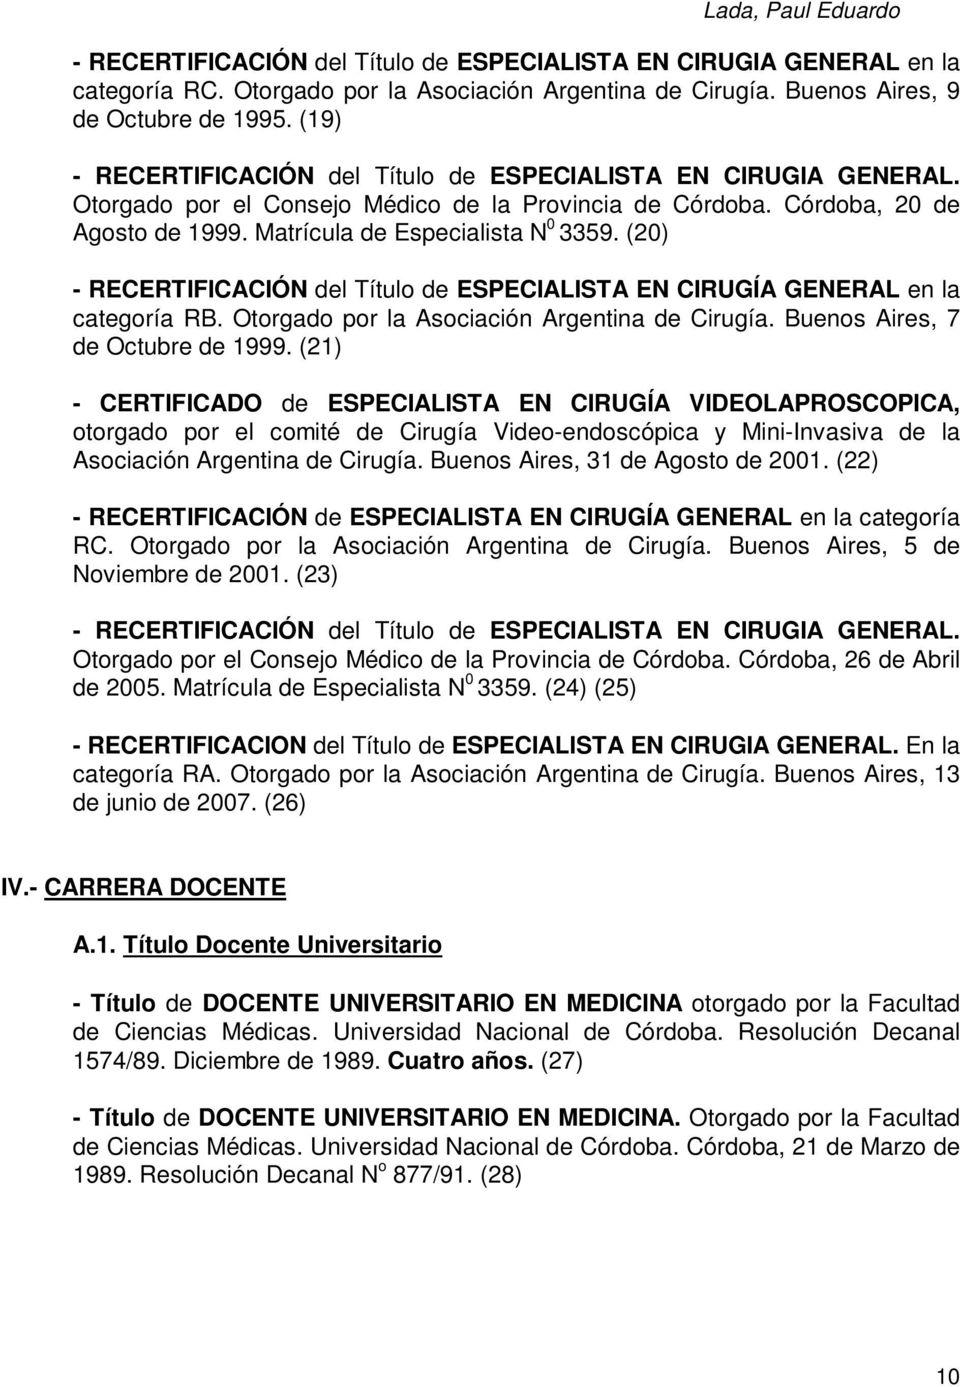 (20) - RECERTIFICACIÓN del Título de ESPECIALISTA EN CIRUGÍA GENERAL en la categoría RB. Otorgado por la Asociación Argentina de Cirugía. Buenos Aires, 7 de Octubre de 1999.